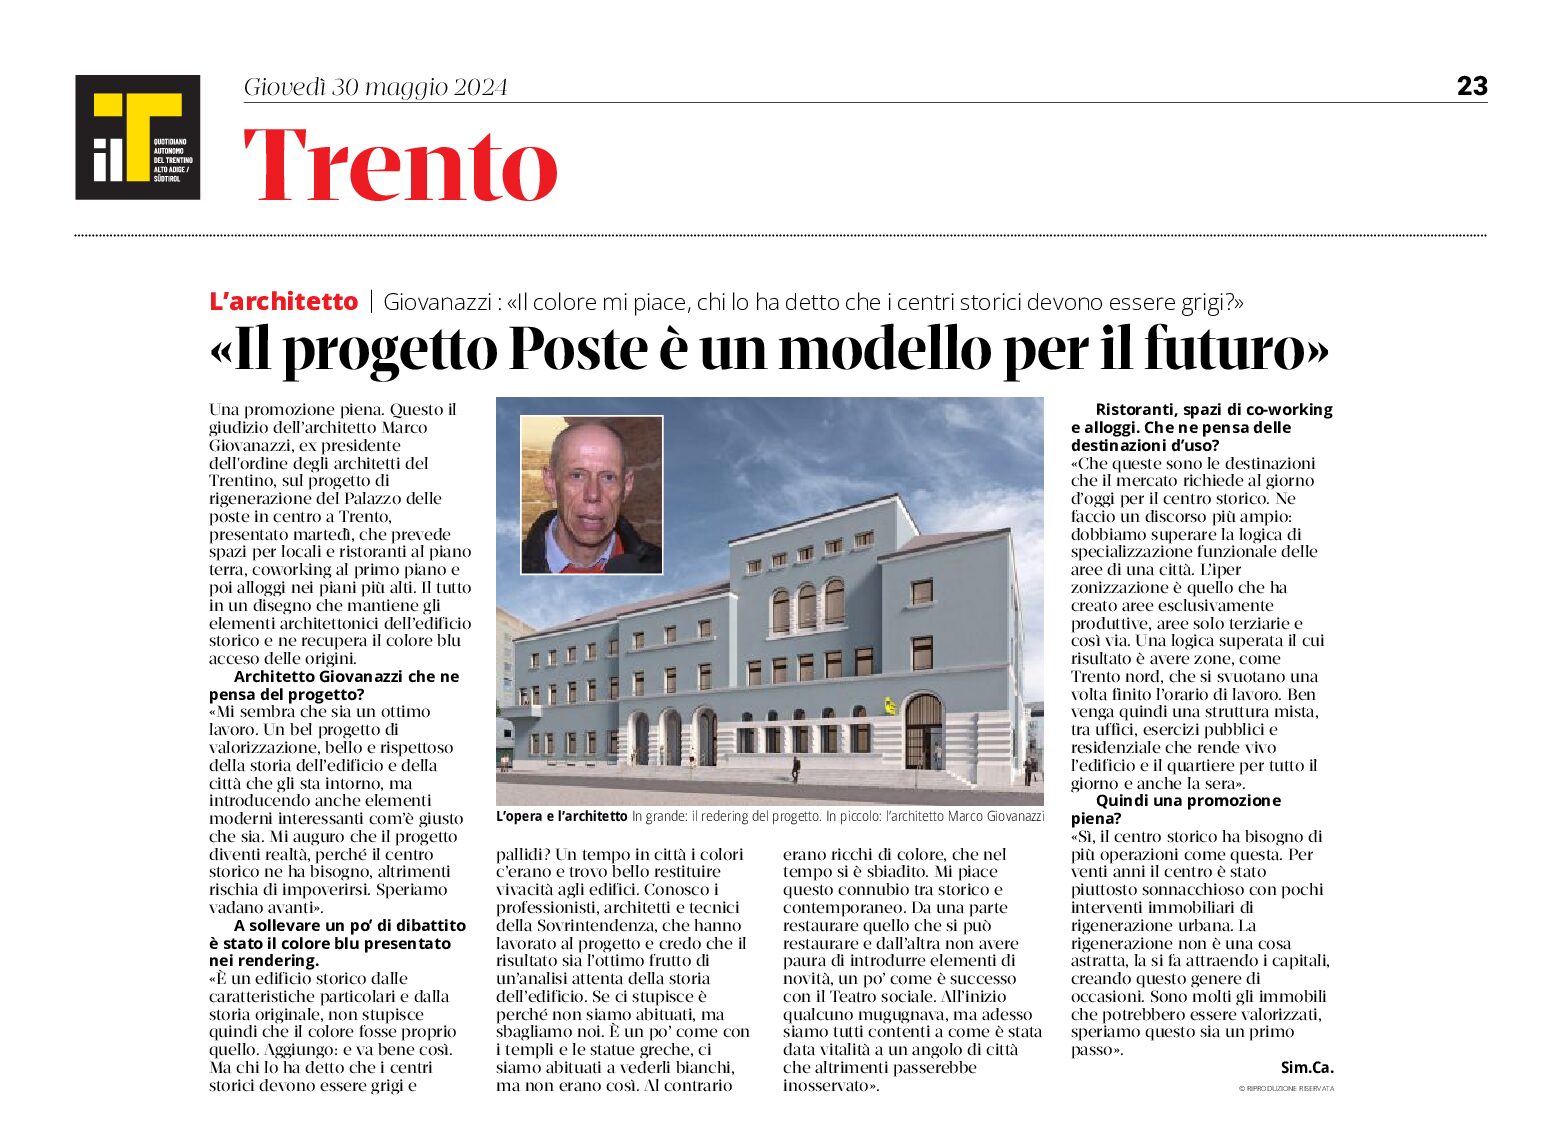 Trento: Giovanazzi “il progetto Poste è un modello per il futuro”